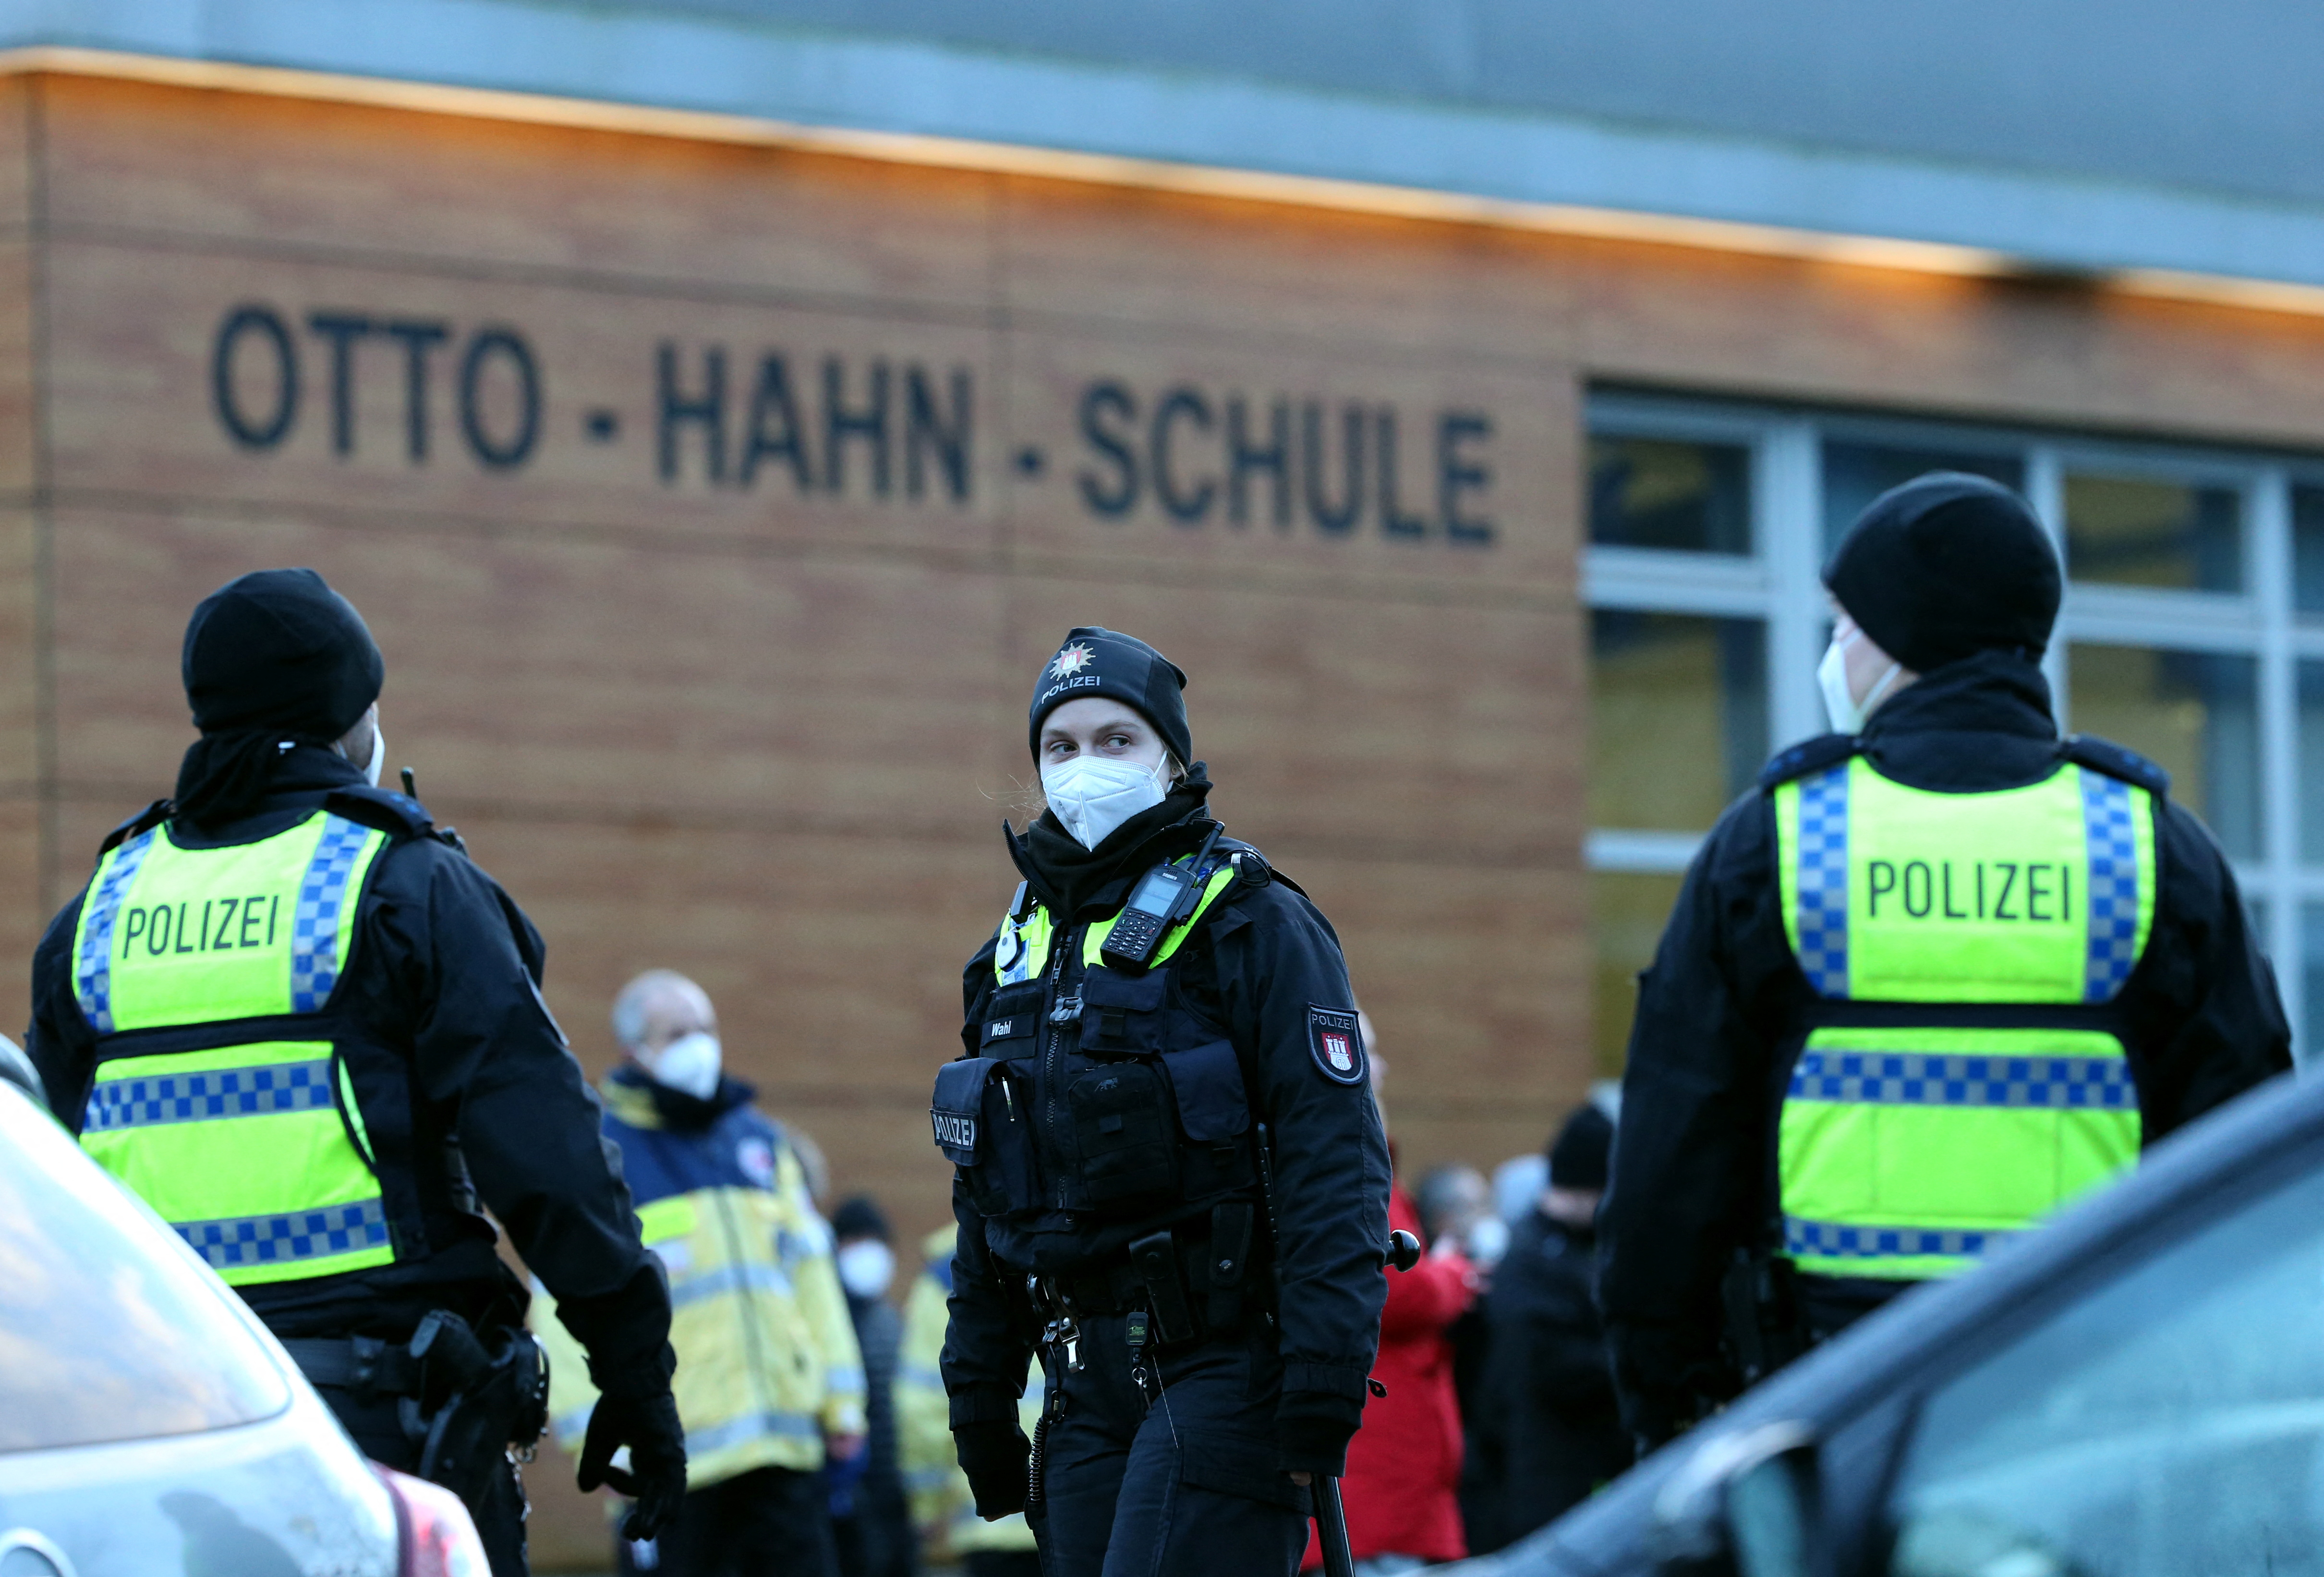 Los tiroteos en escuelas son relativamente raros en Alemania, que tiene algunas de las leyes de armas más estrictas de Europa. Pero una serie reciente de incidentes ha sacudido al país (REUTERS/Cathrin Mueller)